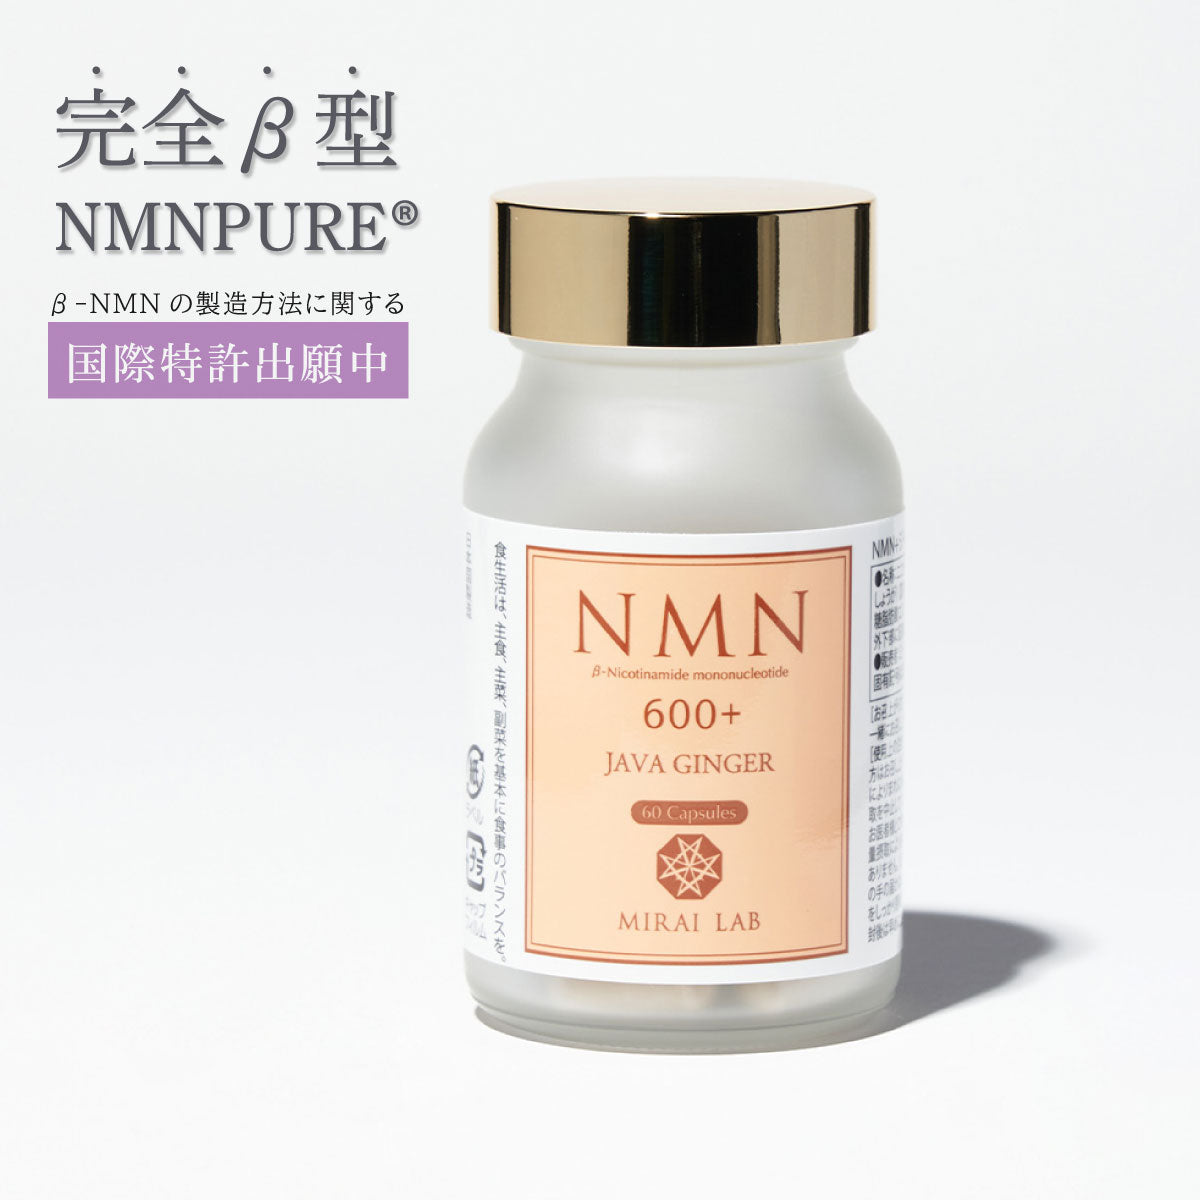 【定期購入】NMN + ジャワ しょうが プラス (60カプセル)